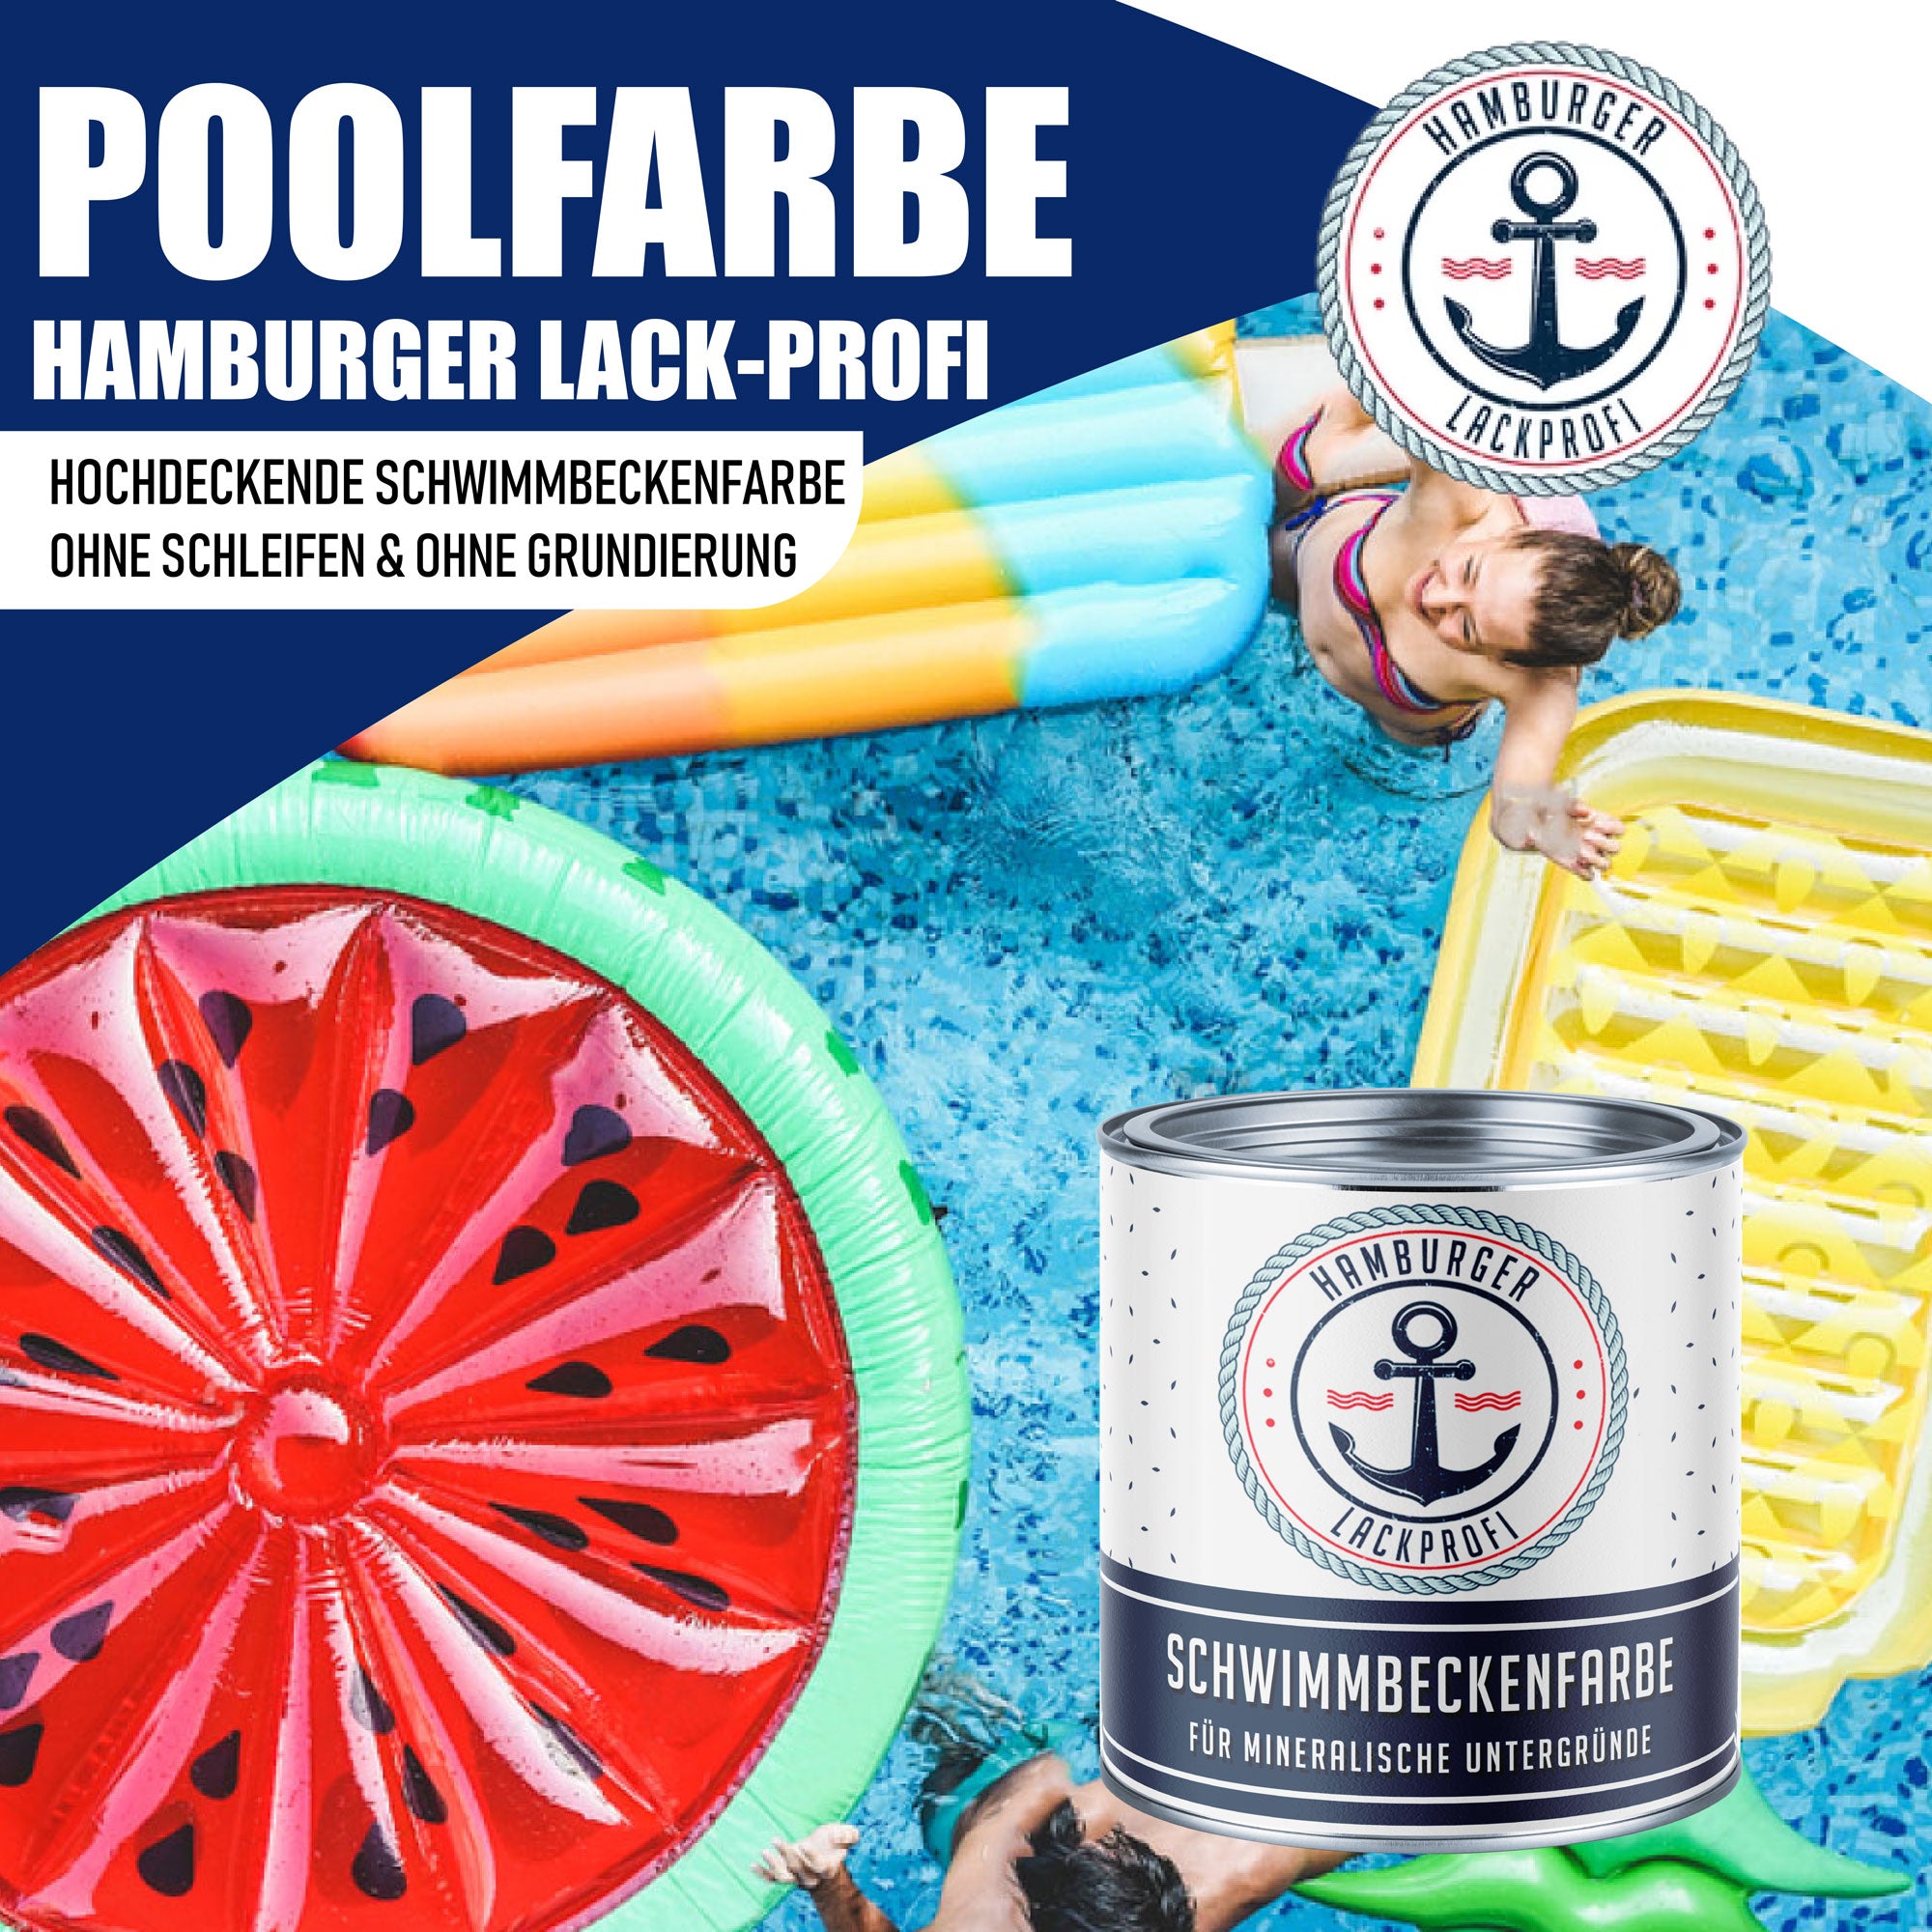 Hamburger Lack-Profi Schwimmbeckenfarbe Tieforange RAL 2011 - hochdeckende Poolfarbe